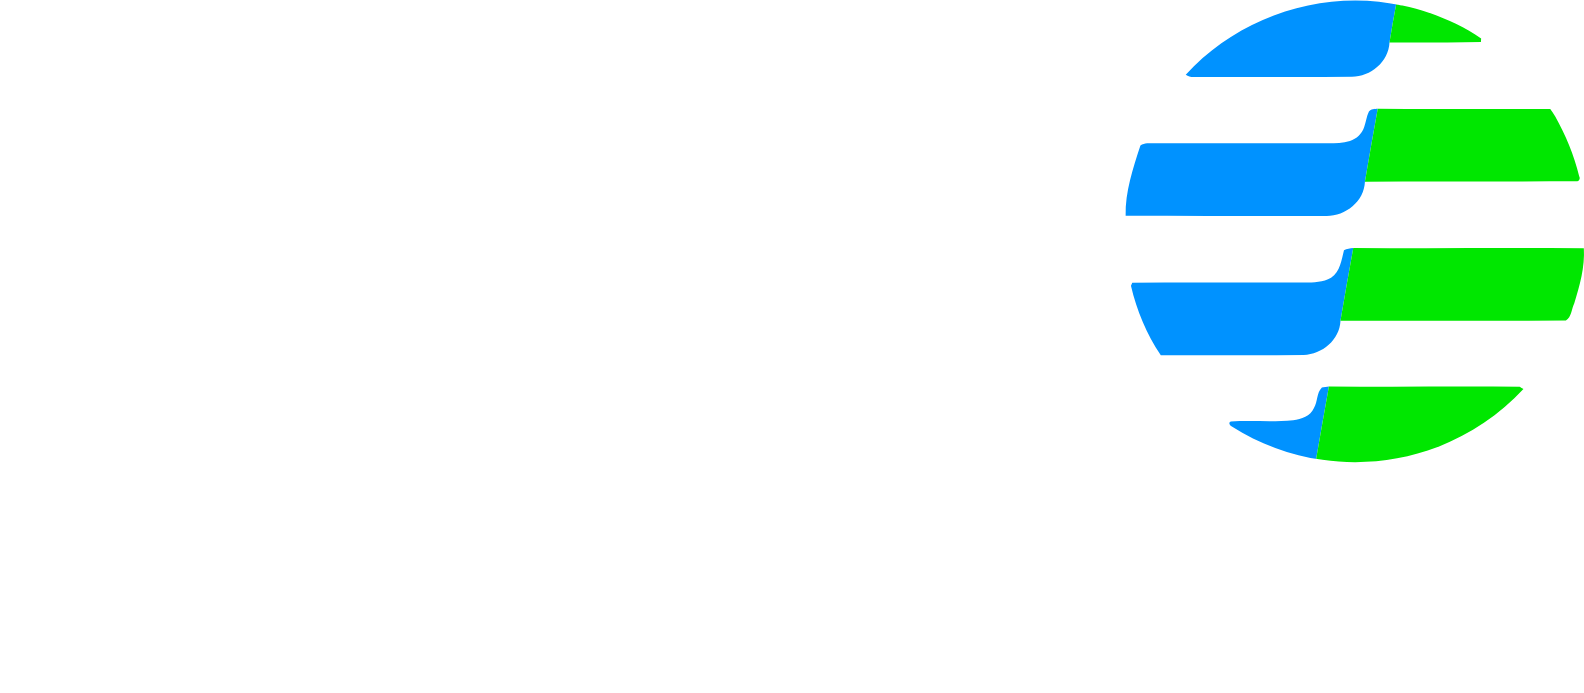 Ultrapar Participacoes logo grand pour les fonds sombres (PNG transparent)